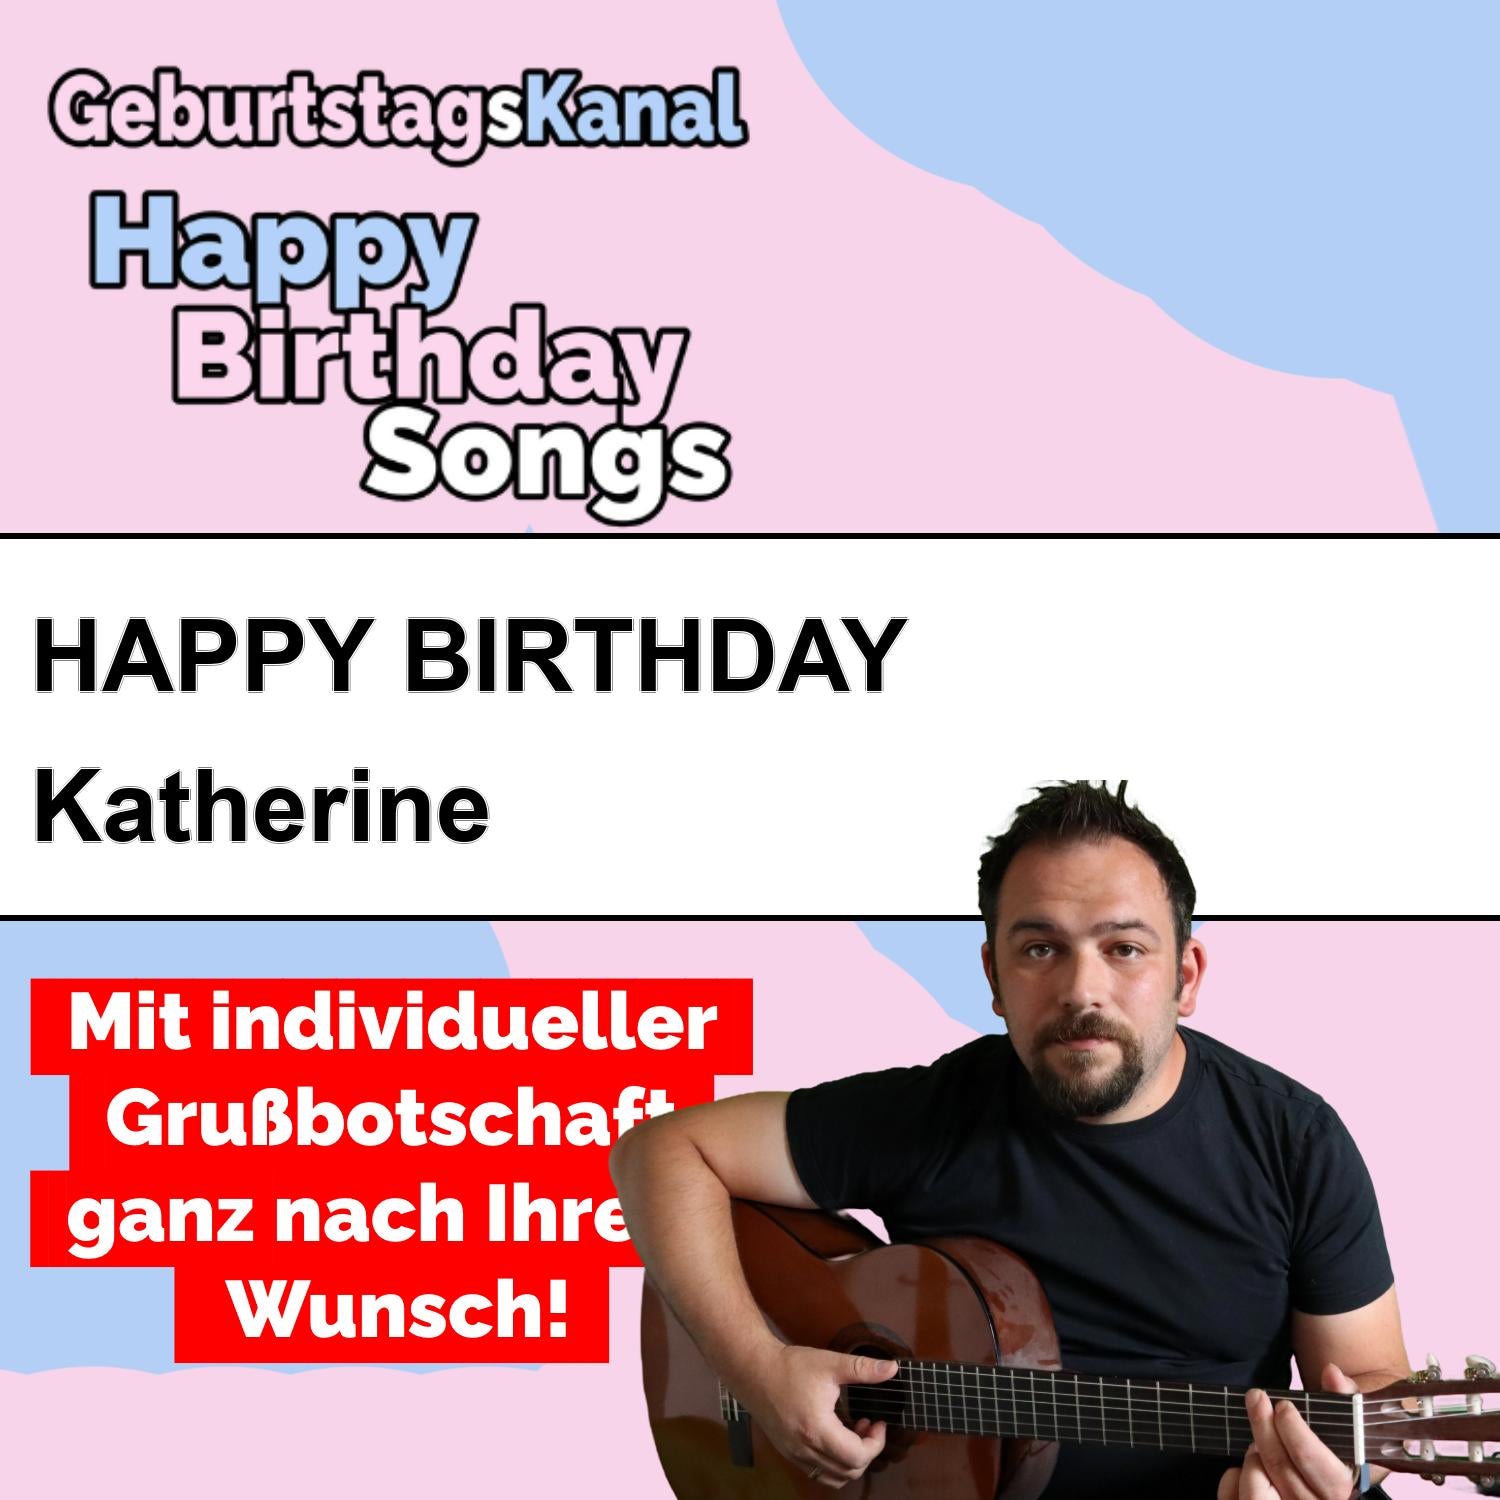 Produktbild Happy Birthday to you Katherine mit Wunschgrußbotschaft